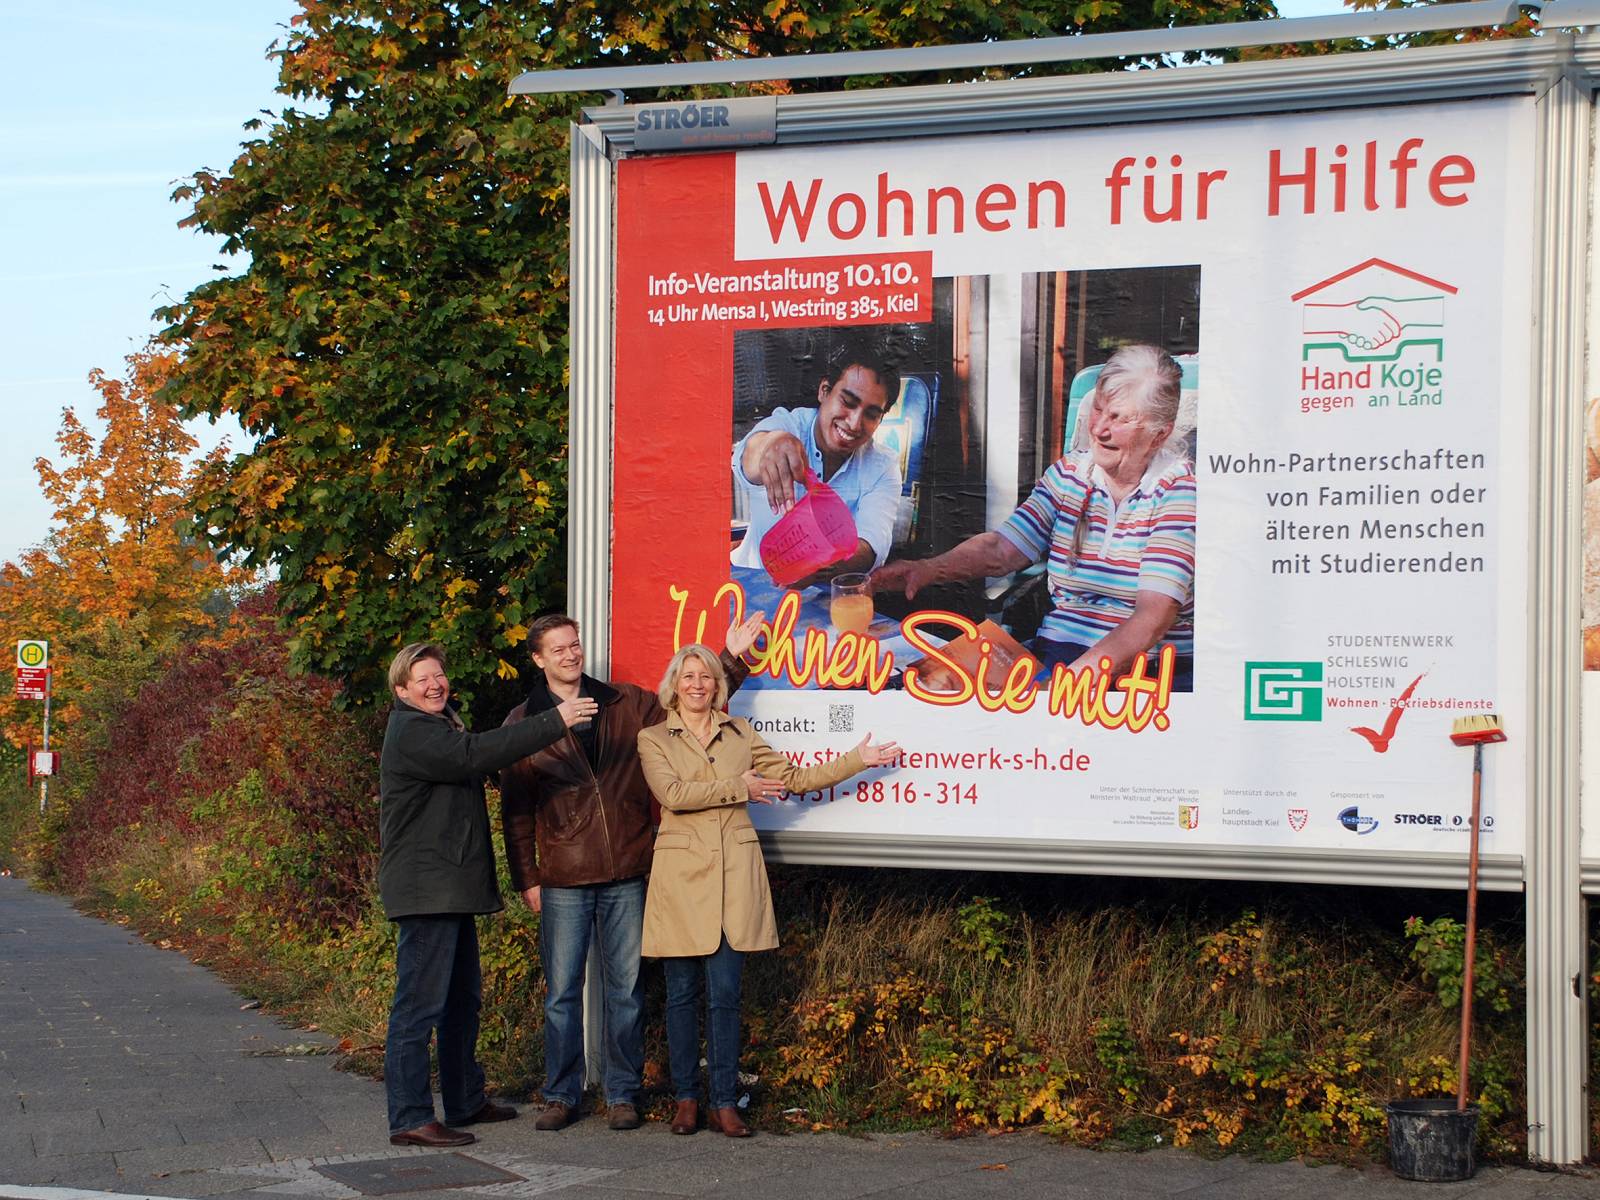 alt="Drei Personen stehen vor einer großen Plakatwerbewand und weisen stolz auf das Plakat mit Werbung für das Projekt Wohnen für Hilfe"